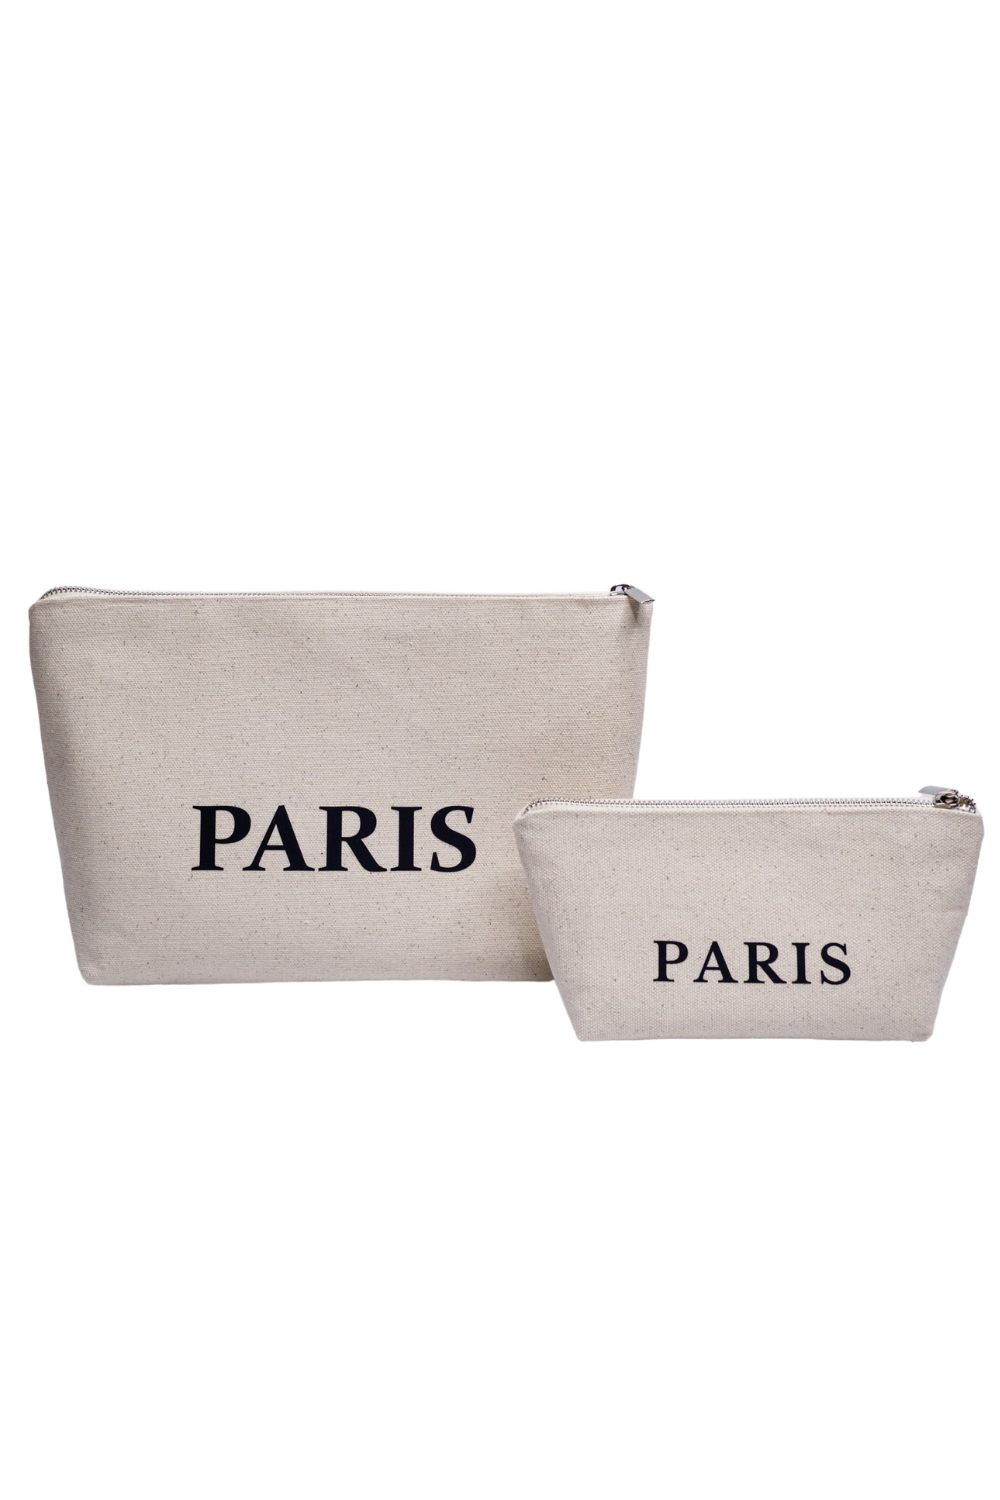 Eco-cotton cosmetic bag white L Paris 02SL01